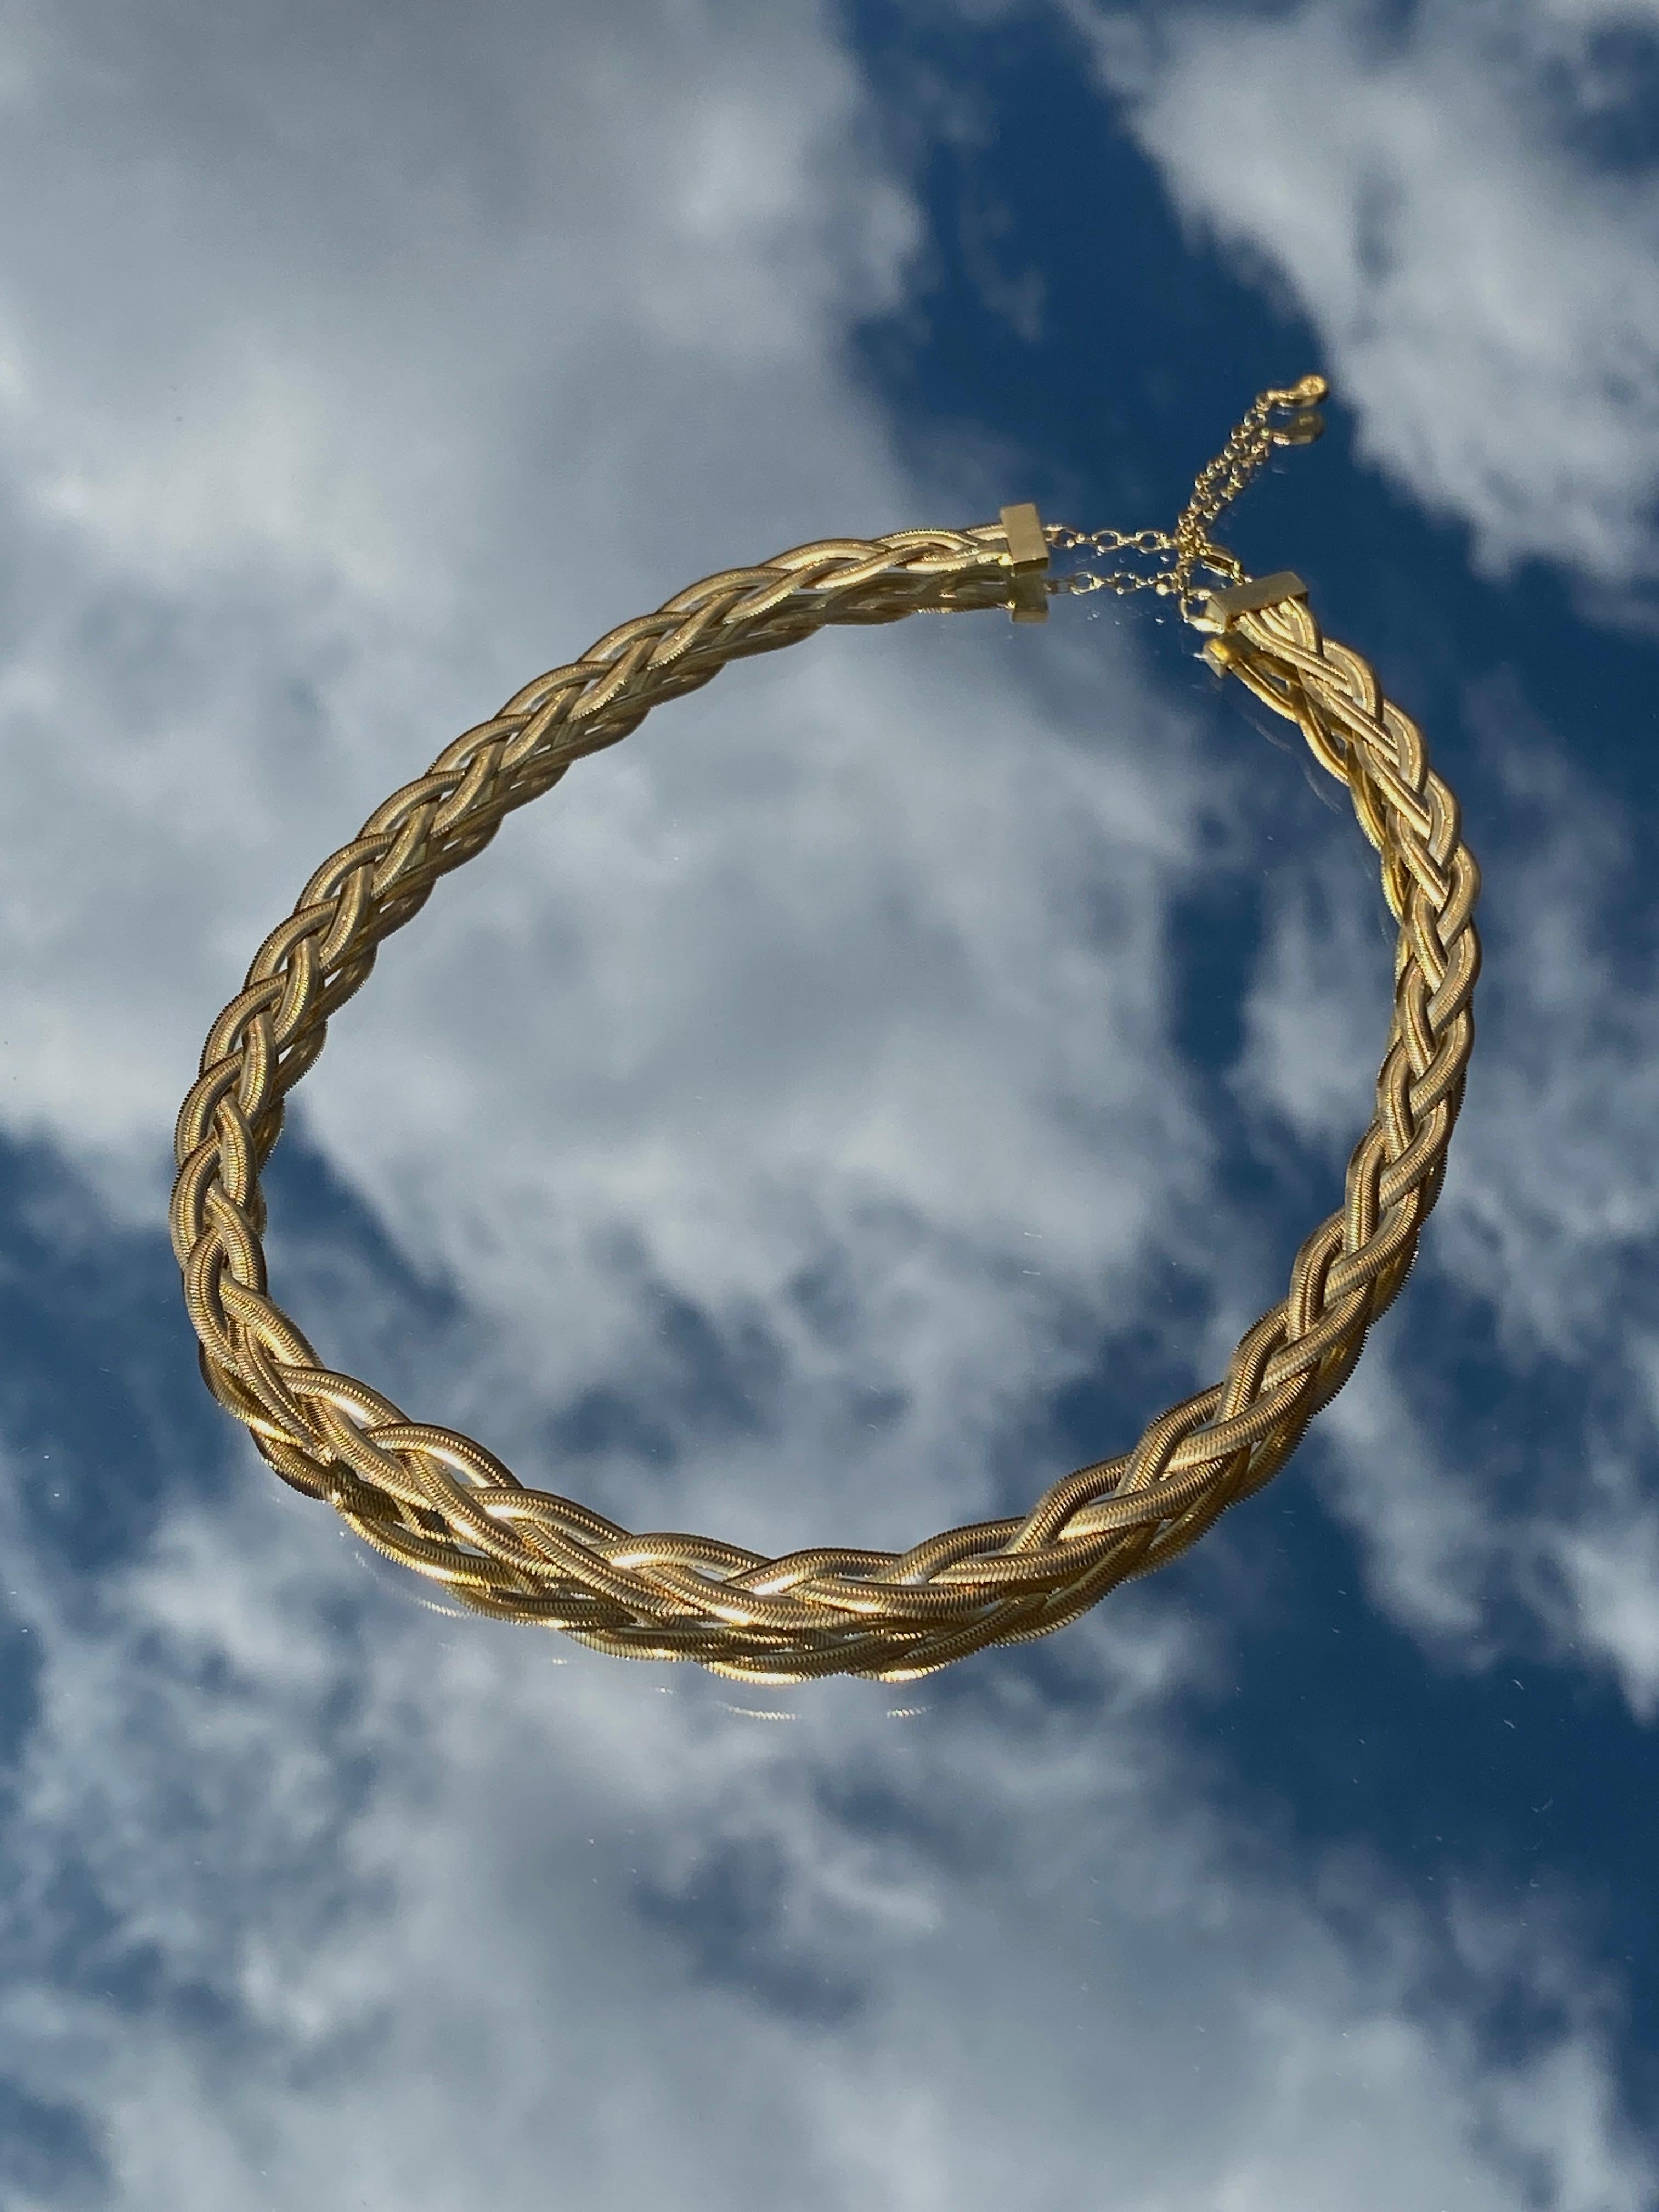 braid gold chain